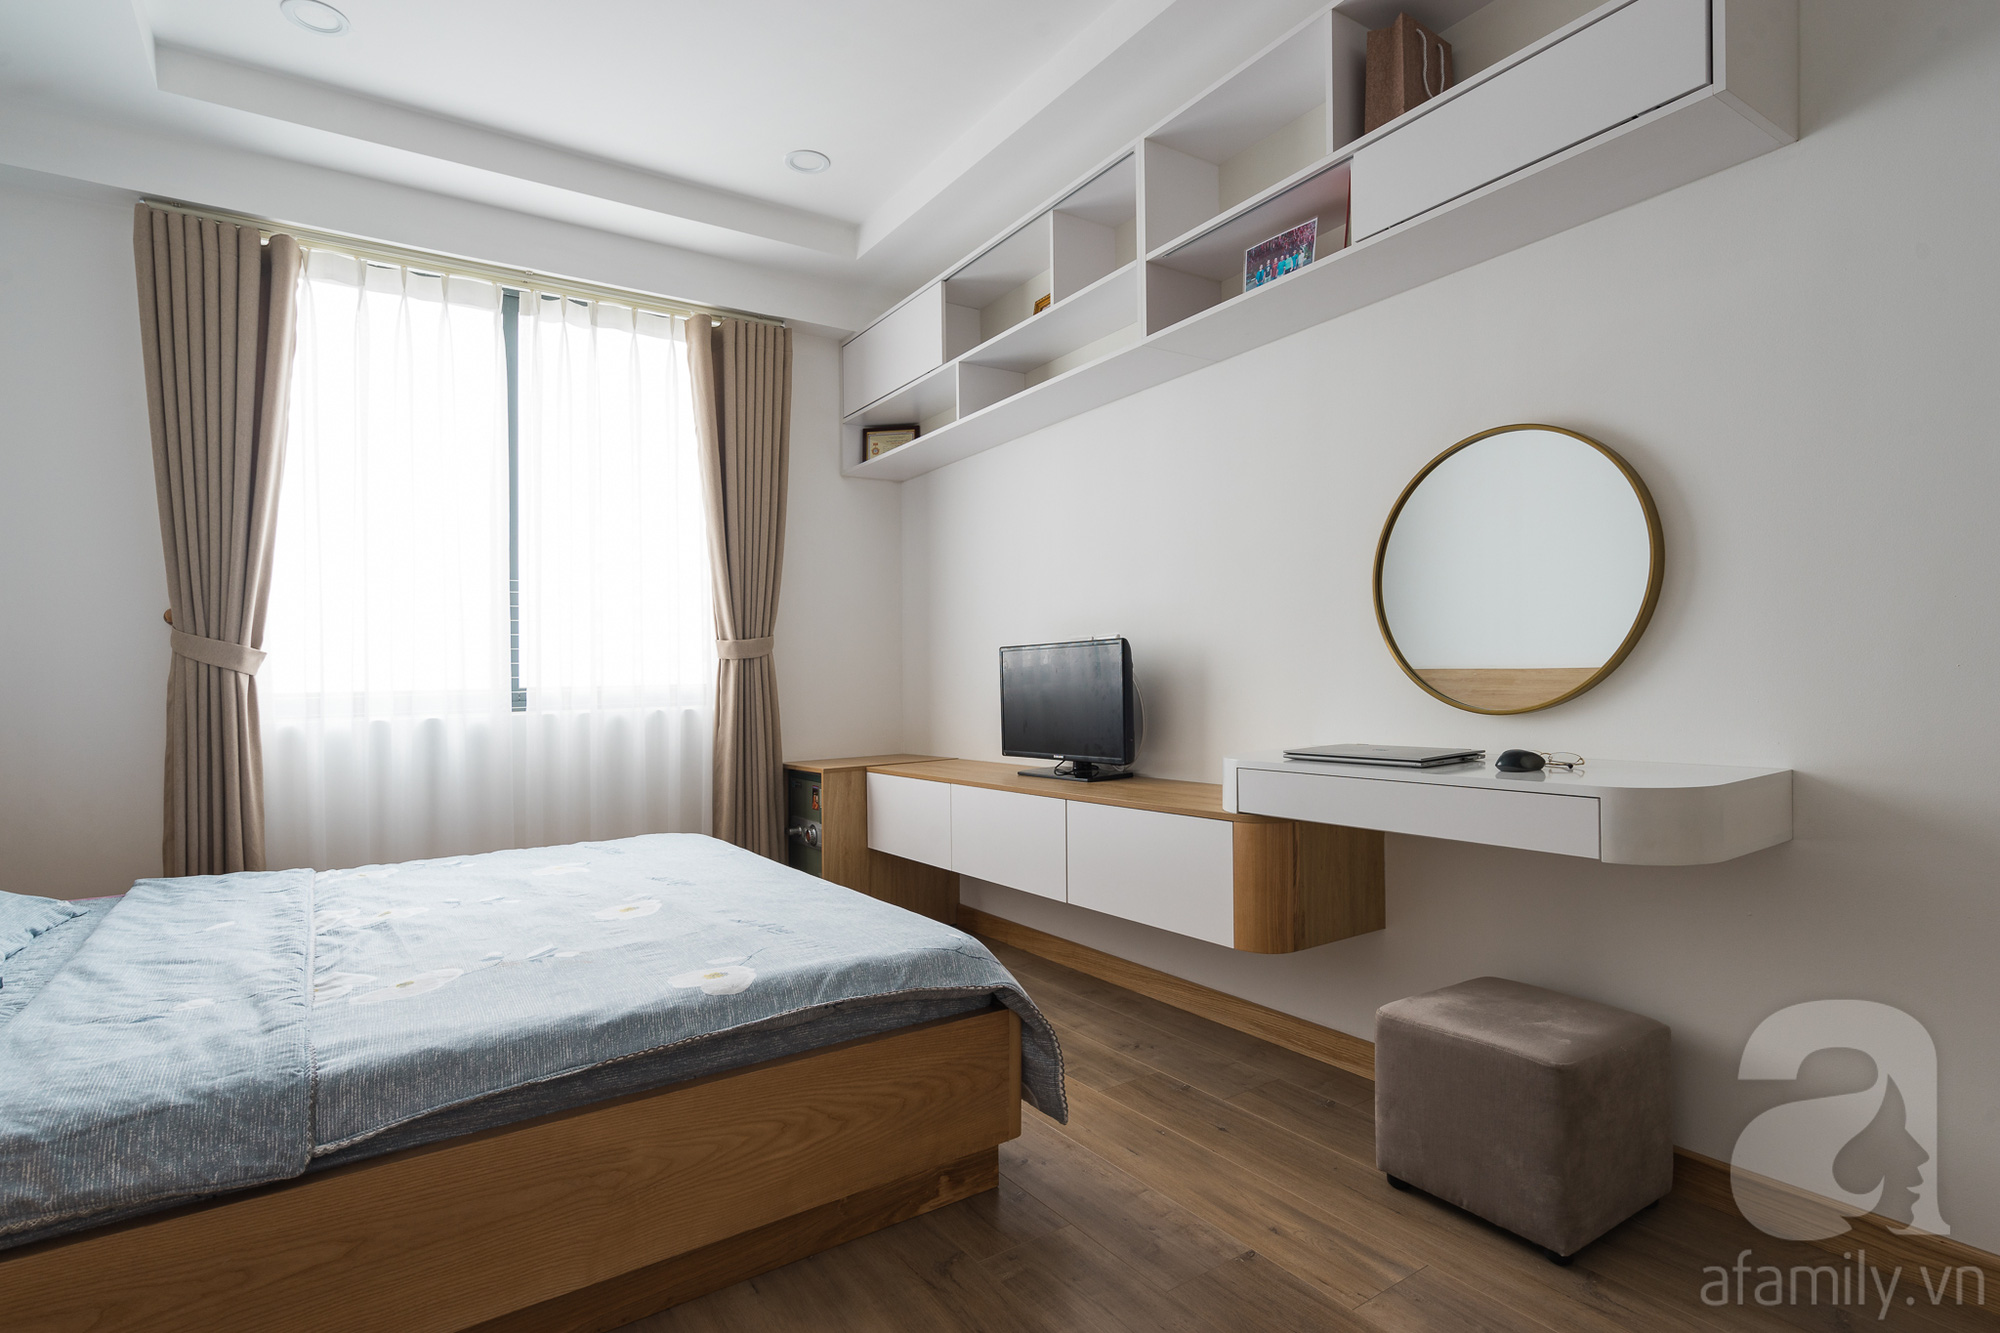 Tư vấn thiết kế căn hộ 110m2 với 3 phòng ngủ tiện nghi ở chung cư Ecolife, Tây Hồ với chi phí hoàn thiện nội thất 290 triệu - Ảnh 16.